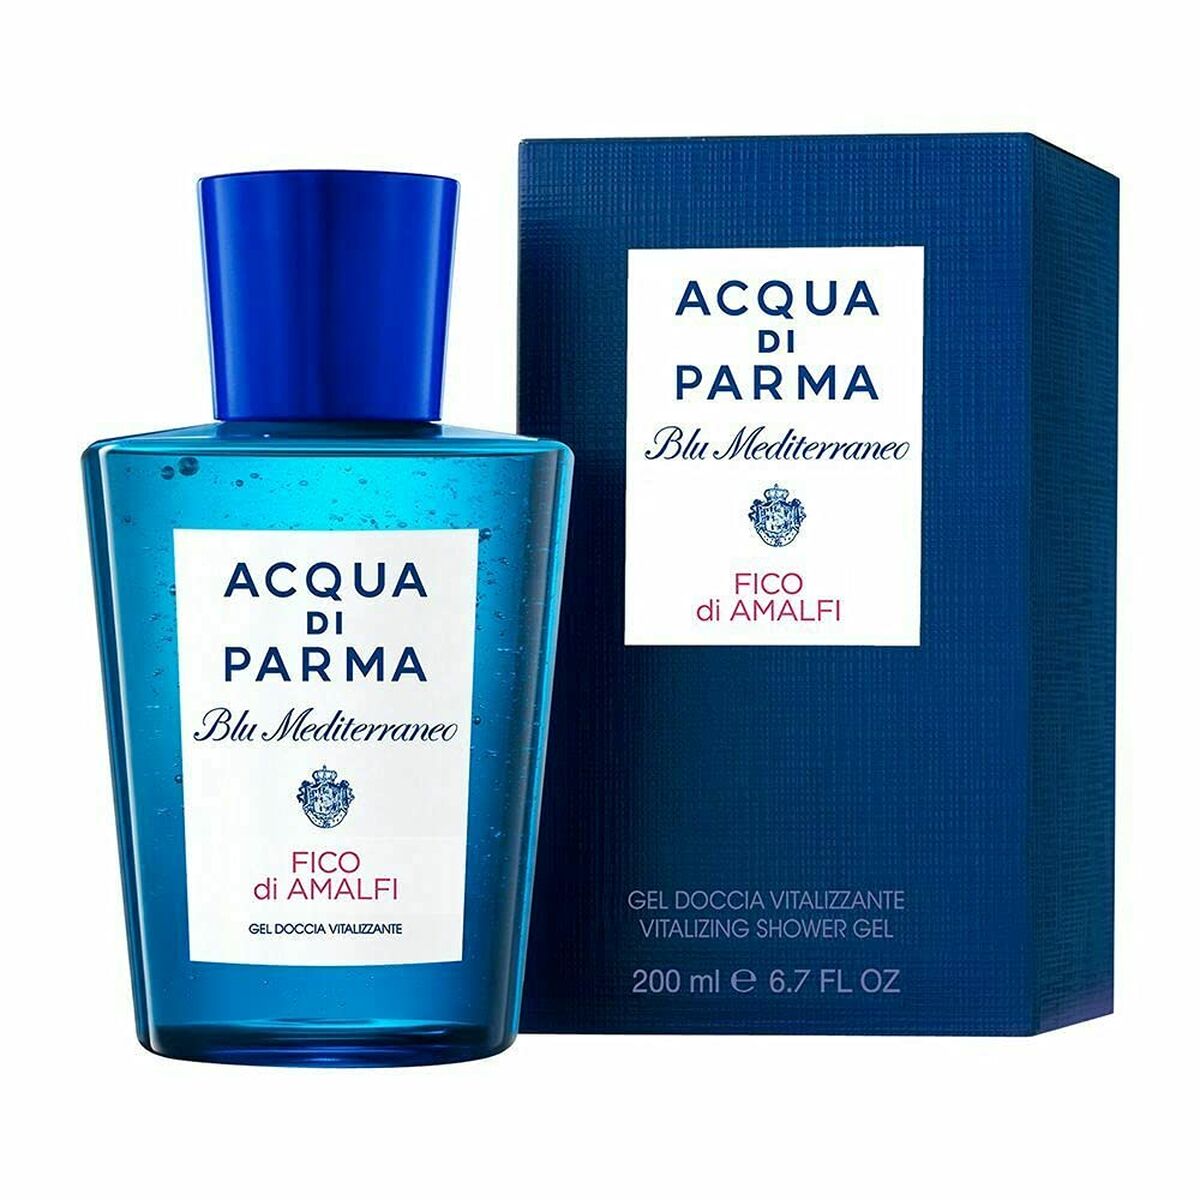 Gel Douche parfumé Acqua Di Parma Blu Mediterraneo Fico di Amalfi (200 ml)